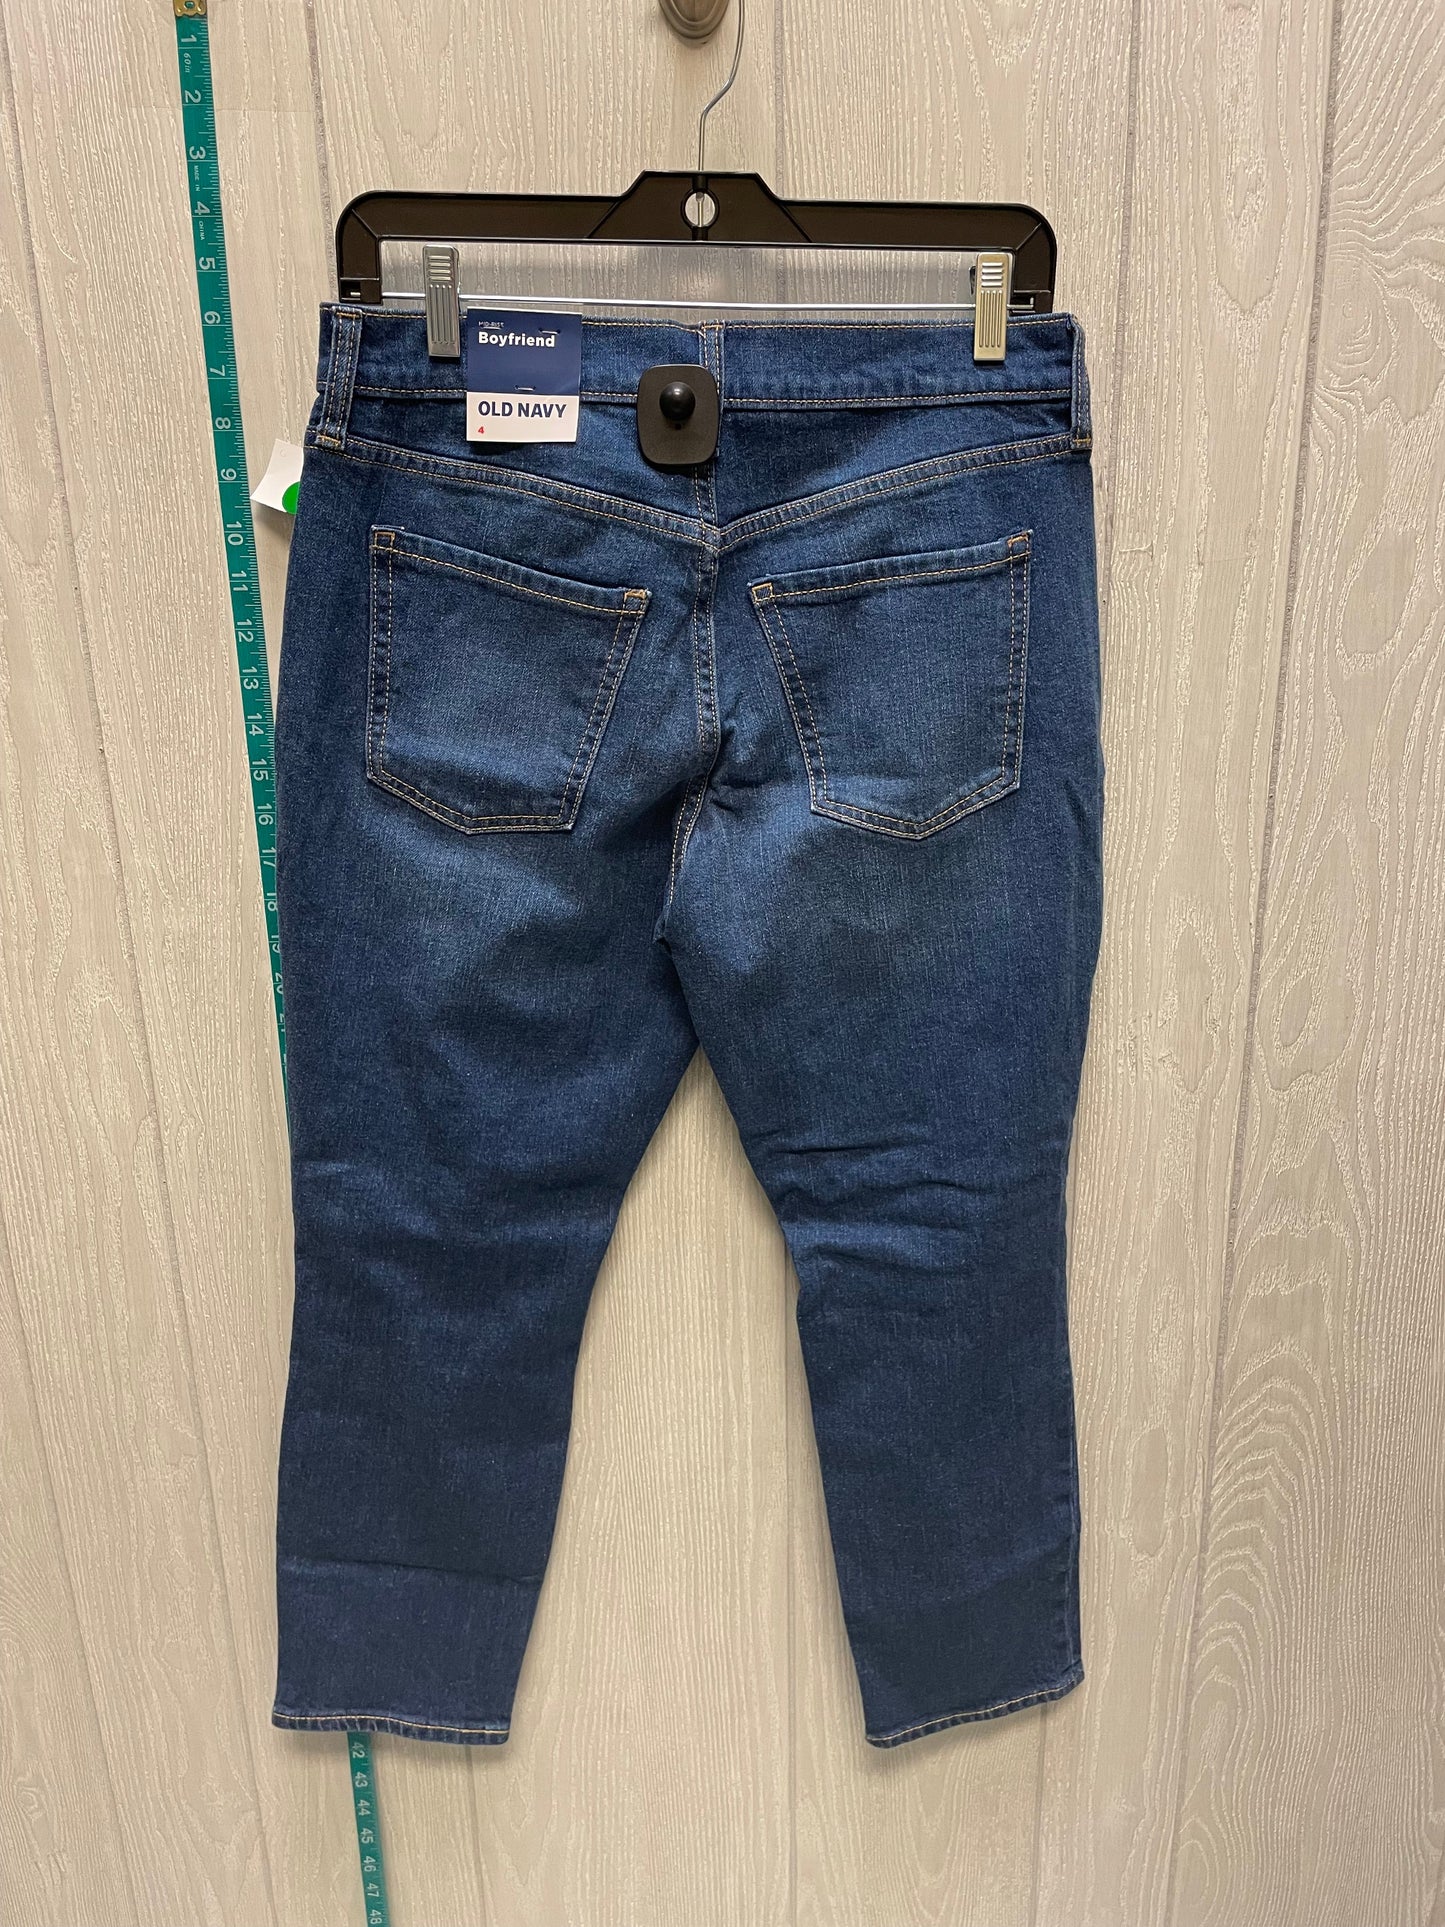 Blue Denim Jeans Boyfriend Old Navy, Size 4